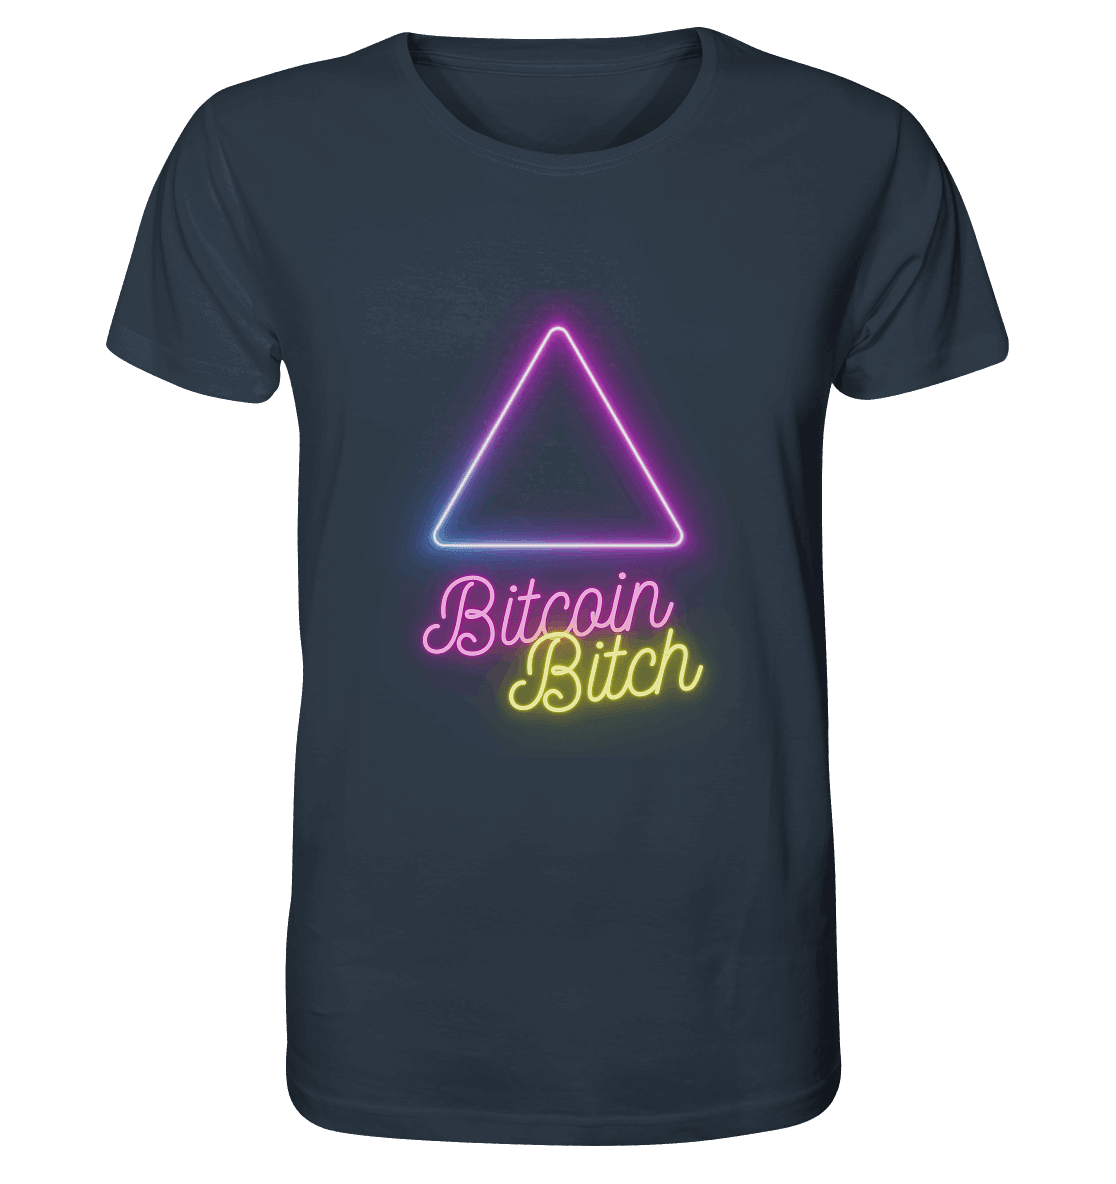 Bitcoin Bitch - Organic Shirt